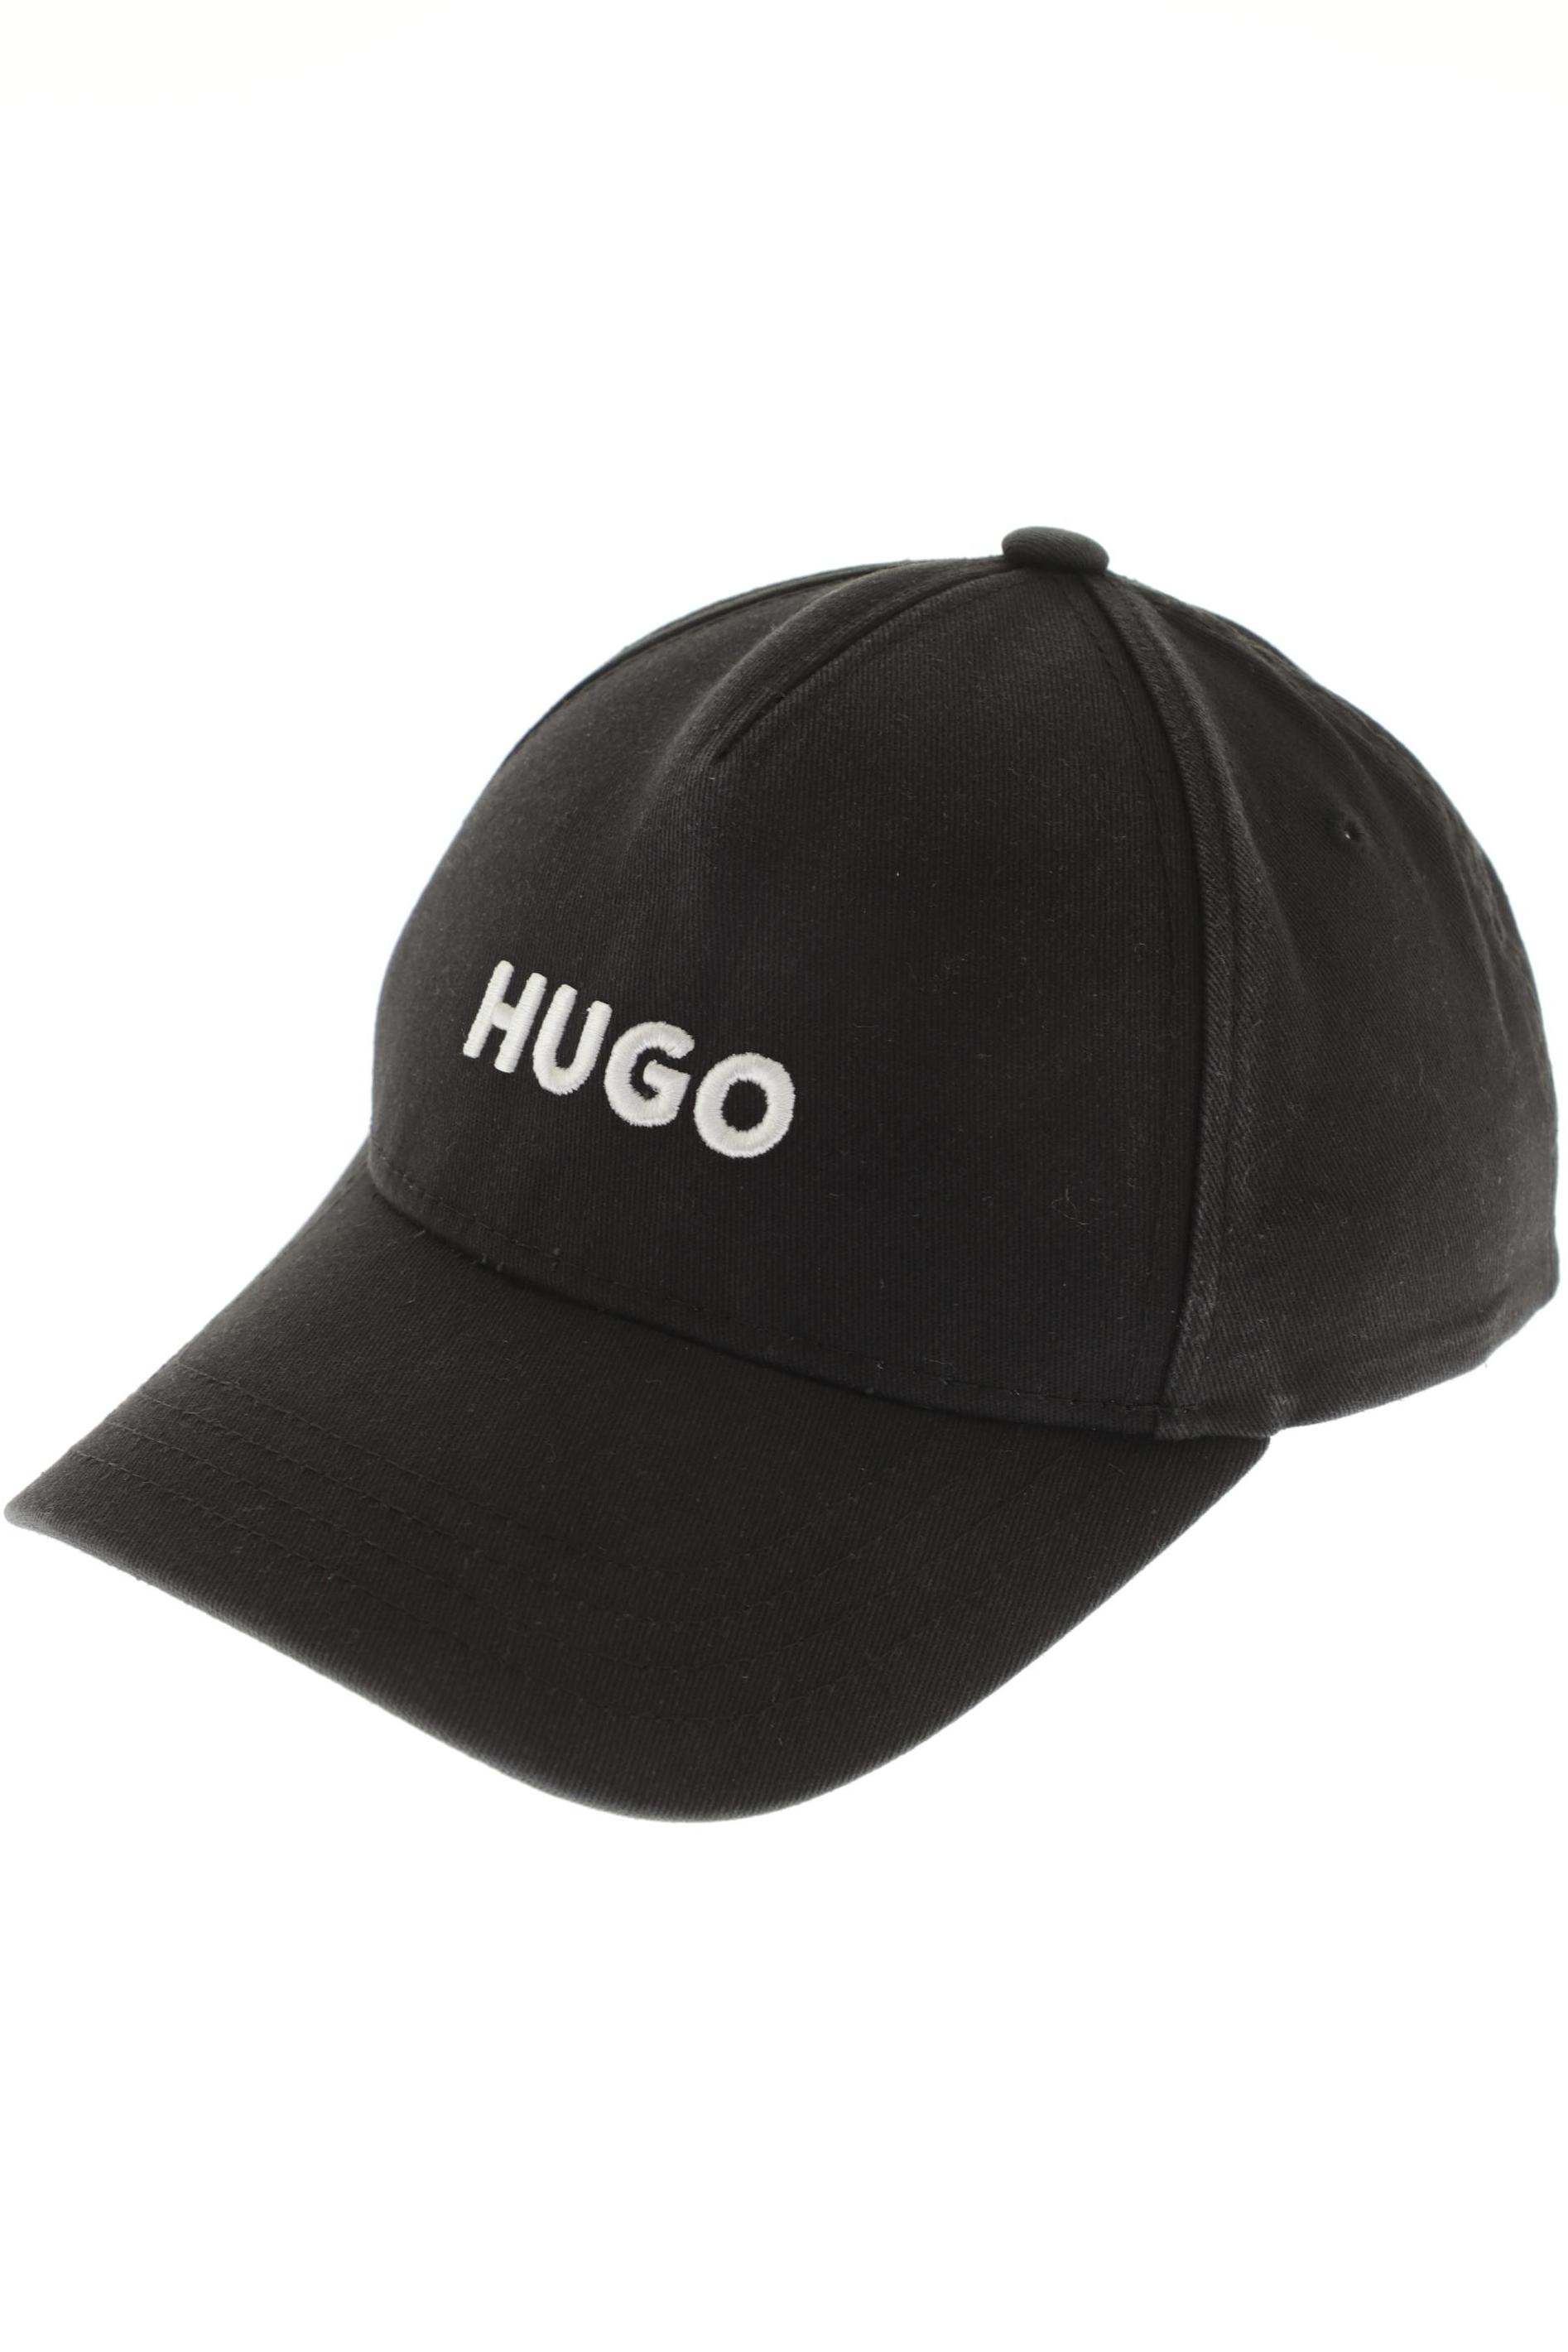 HUGO by Hugo Boss Herren Hut/Mütze, schwarz von HUGO by Hugo Boss